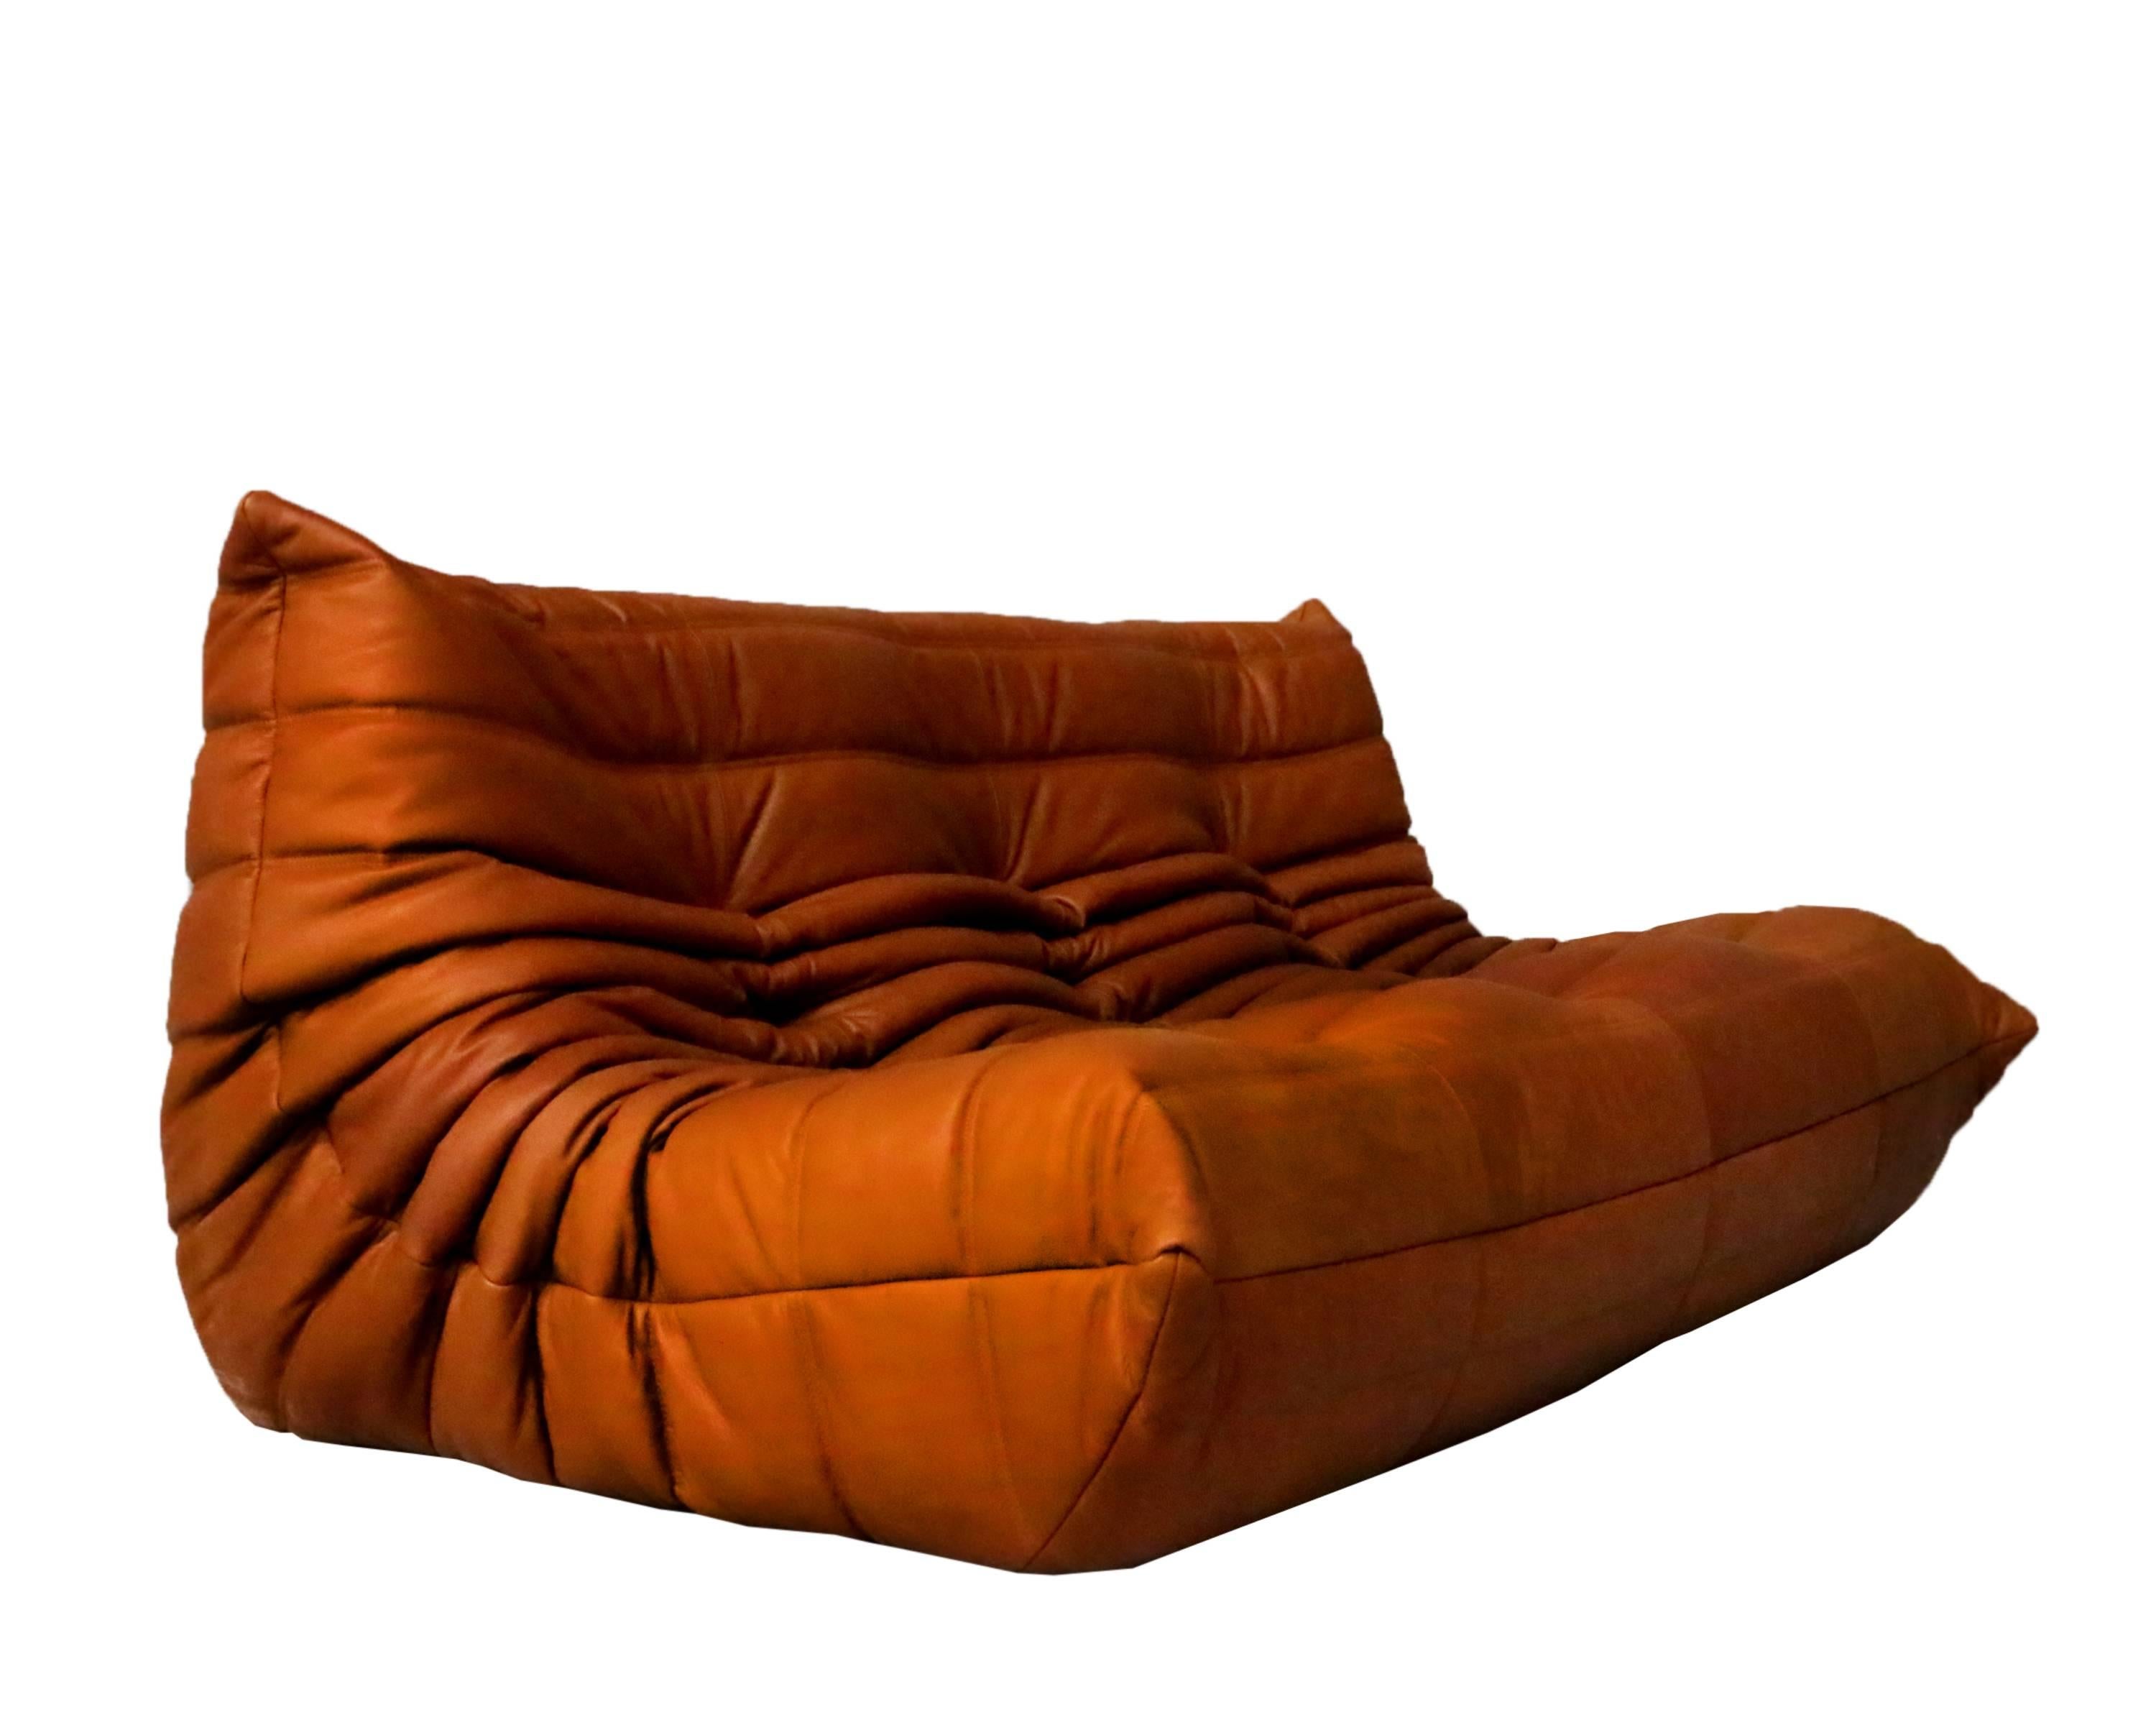 Post-Modern Cognac Leather Ligne Roset Togo Sofa Set, designed by Michel Ducaroy 1973